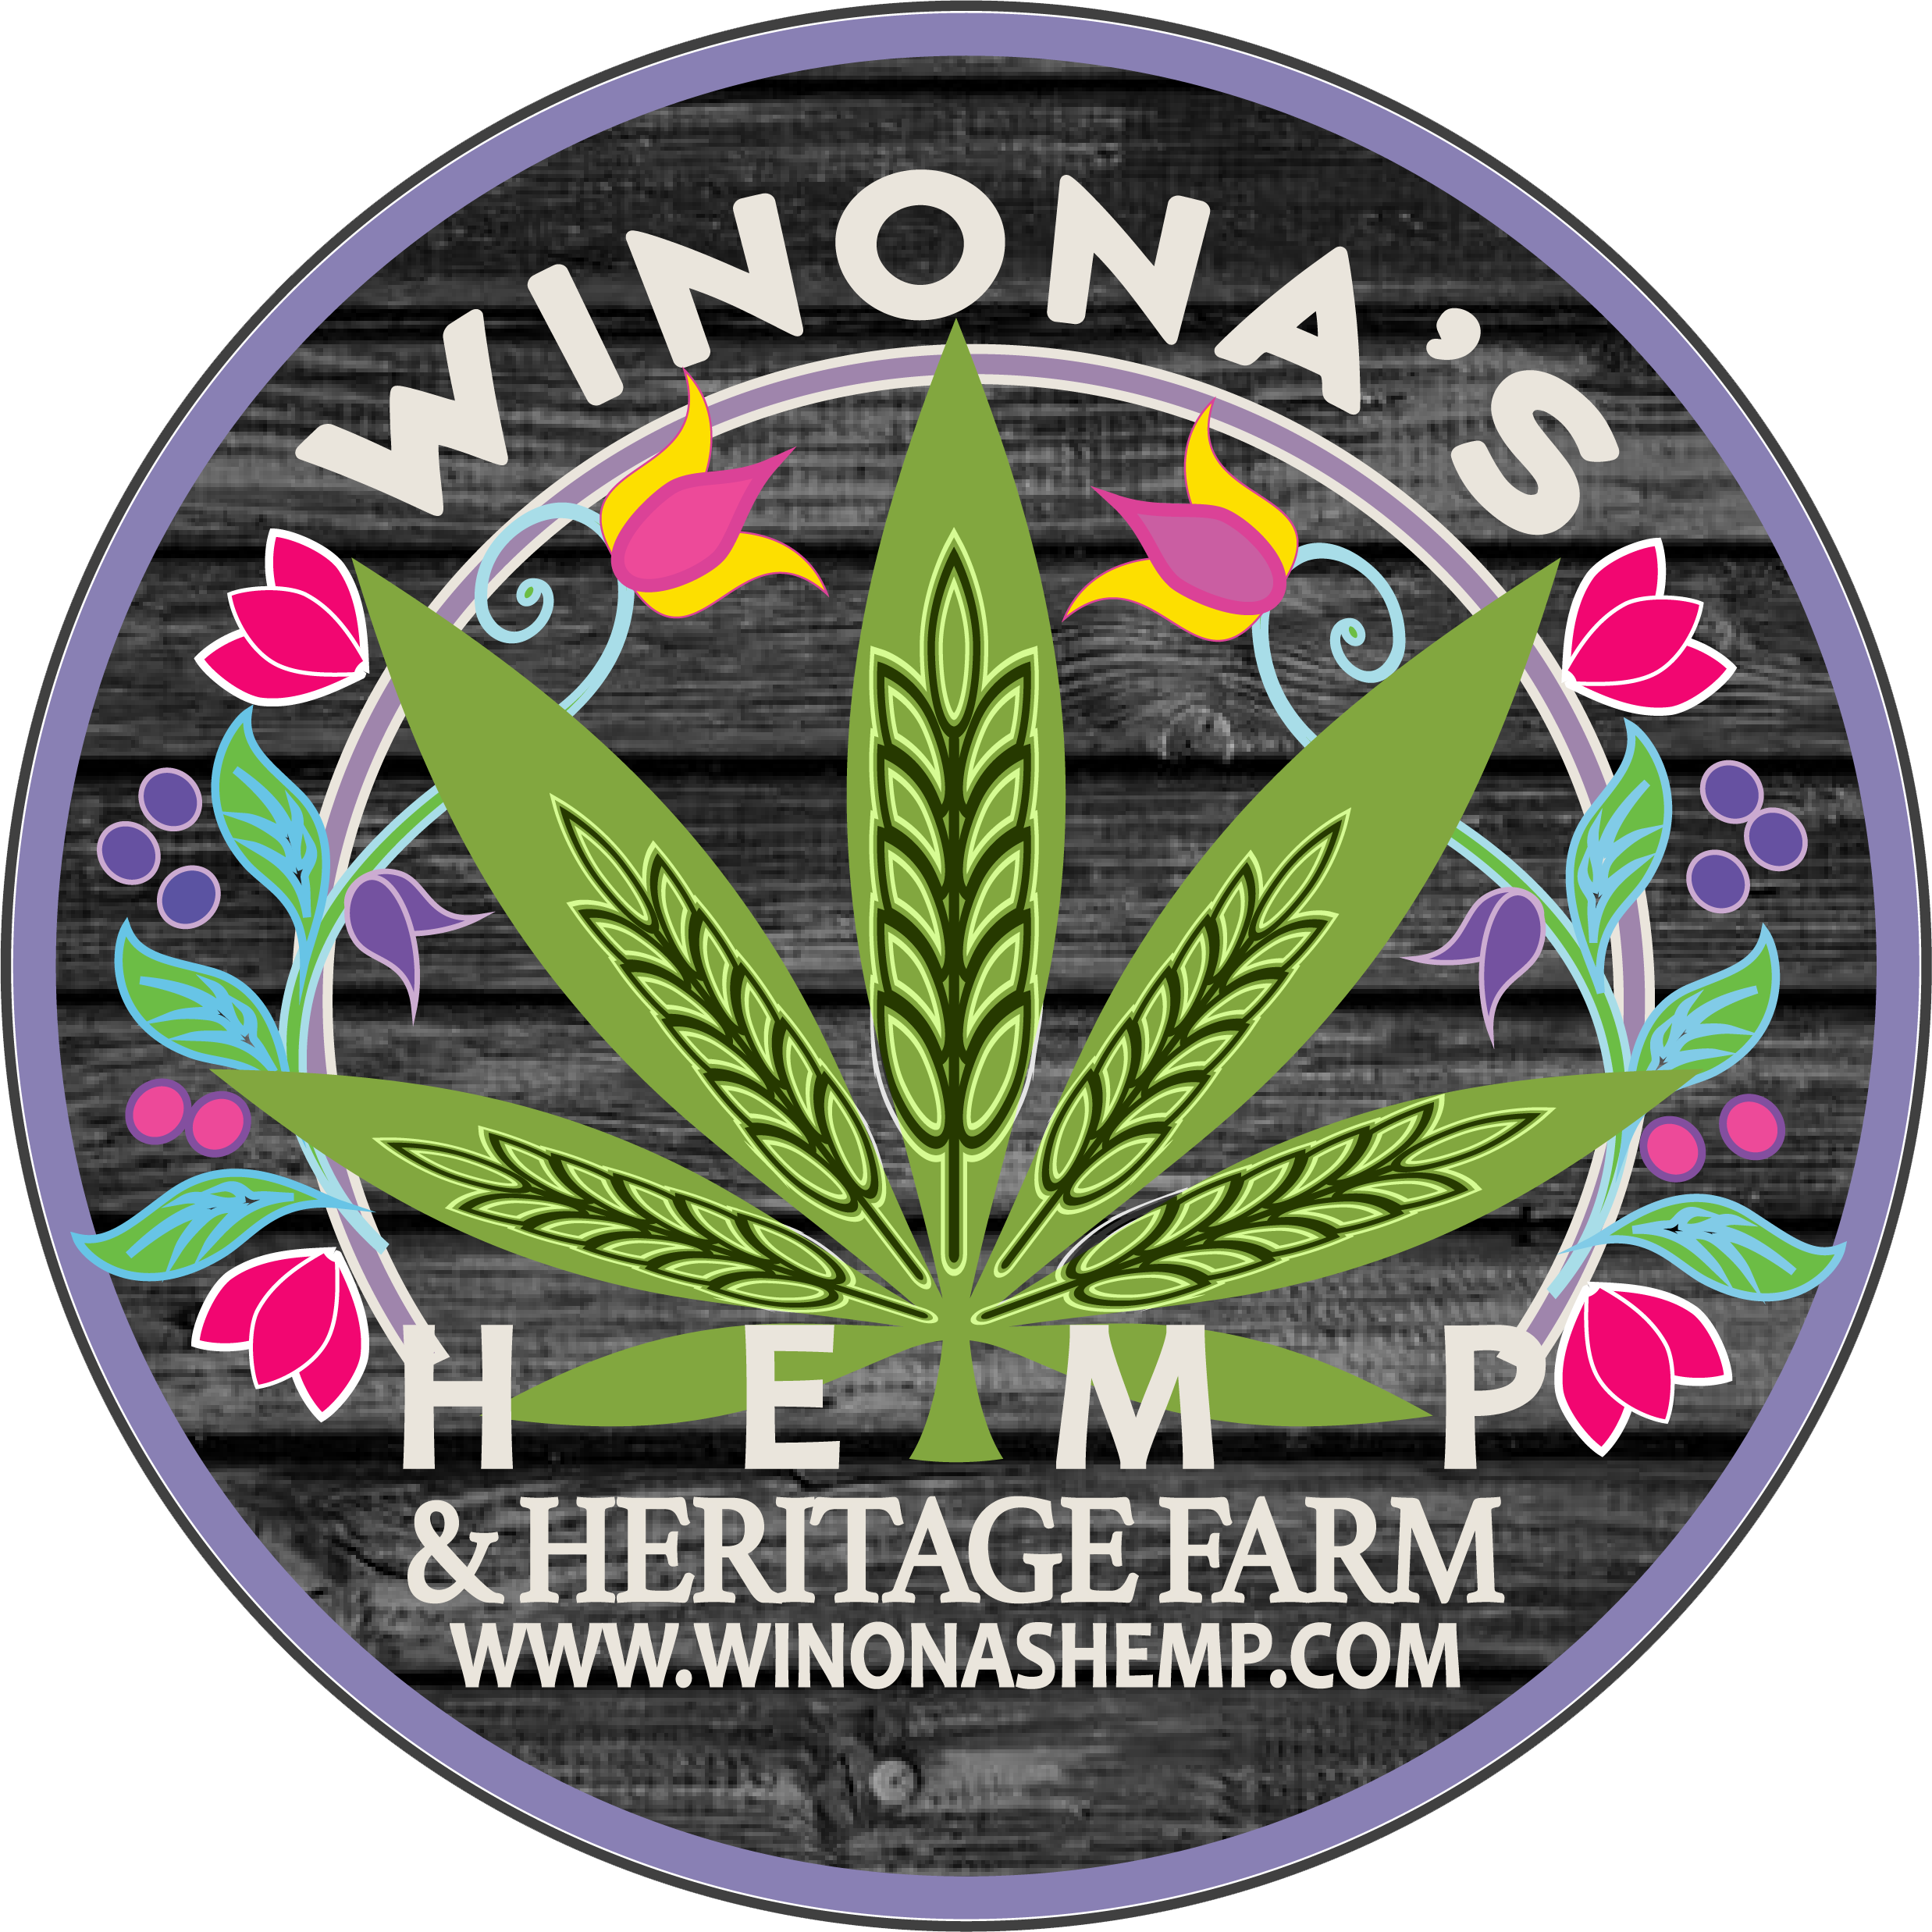 Contact us — Winona's Hemp & Heritage Farm